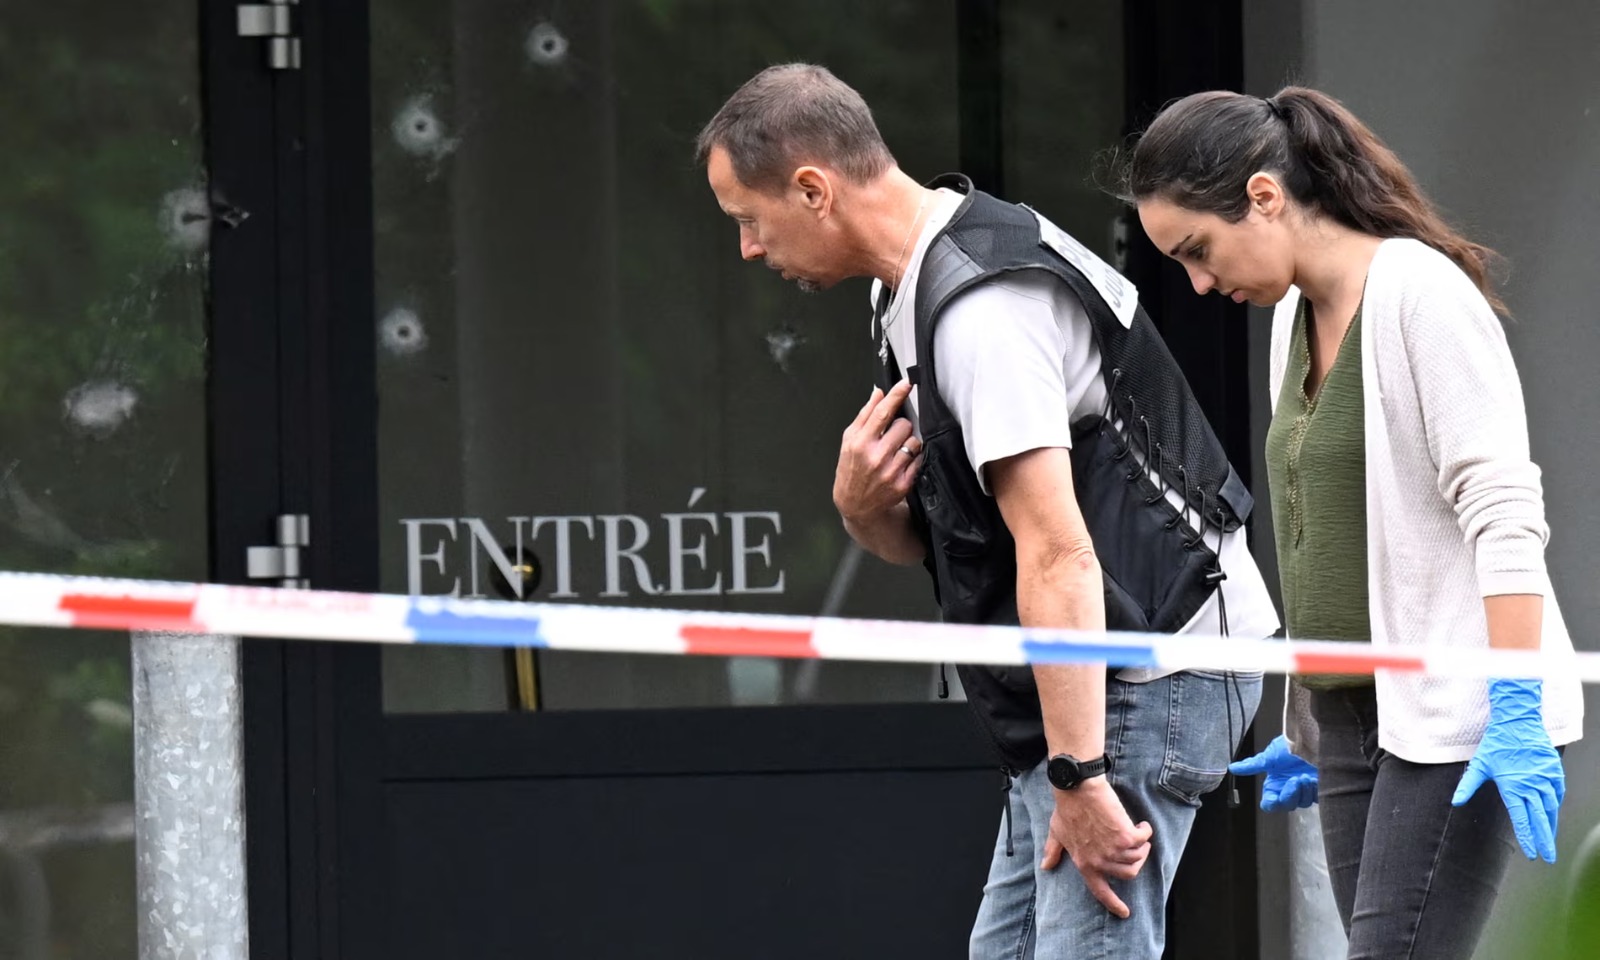 Sulm me armë zjarri në një ceremoni martesore në Francë, raportohet për viktima dhe të plagosur. Ja çfarë dyshohet